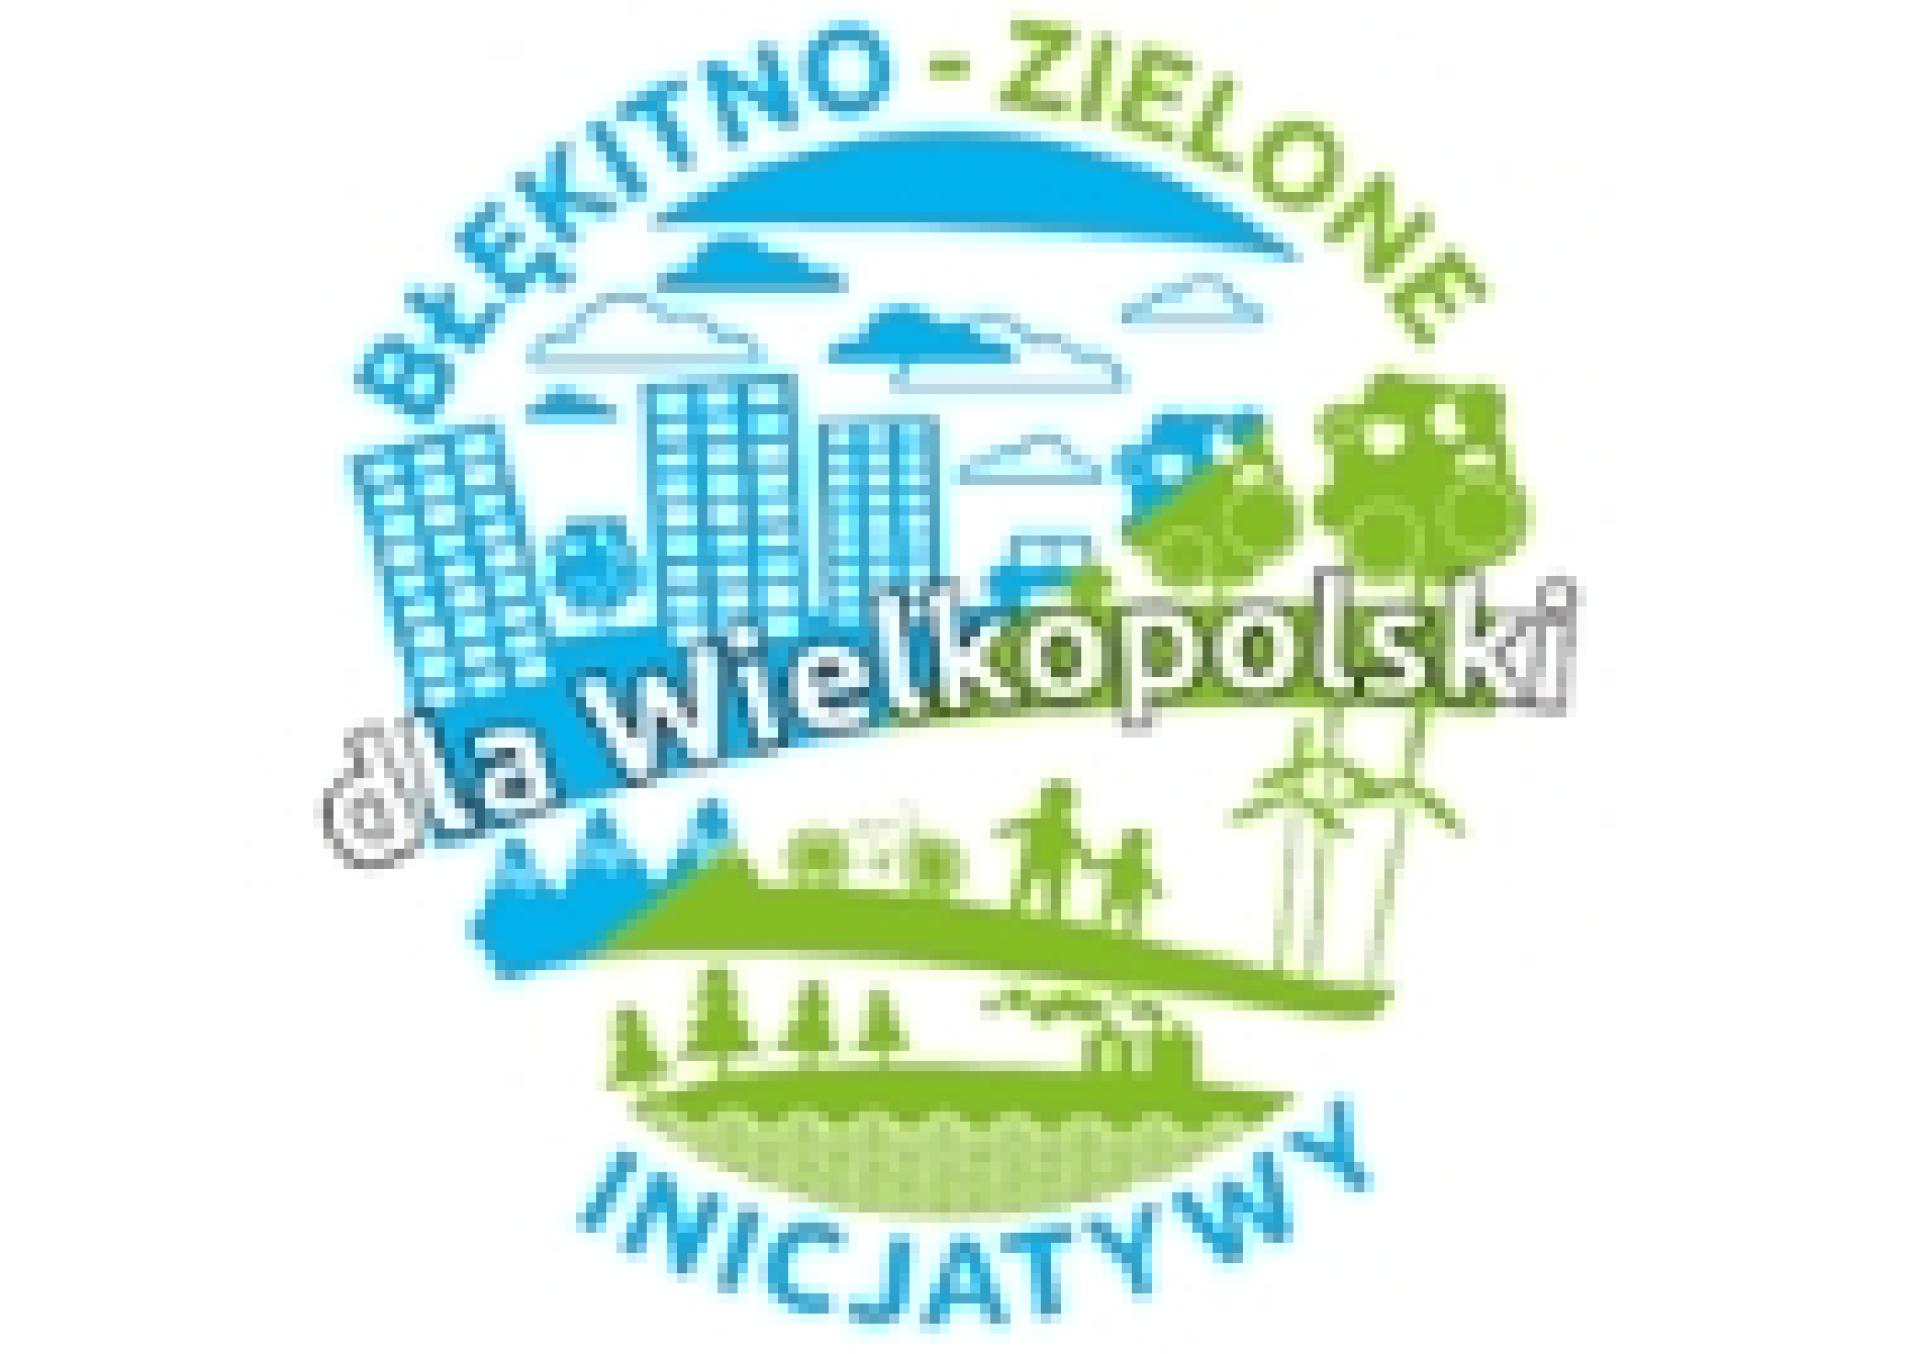 Ogłoszenie naboru wniosków na dofinansowanie zadań do realizacji w 2022 r. w ramach Programu  pn. Błękitno-zielone inicjatywy dla Wielkopolski - zobacz więcej